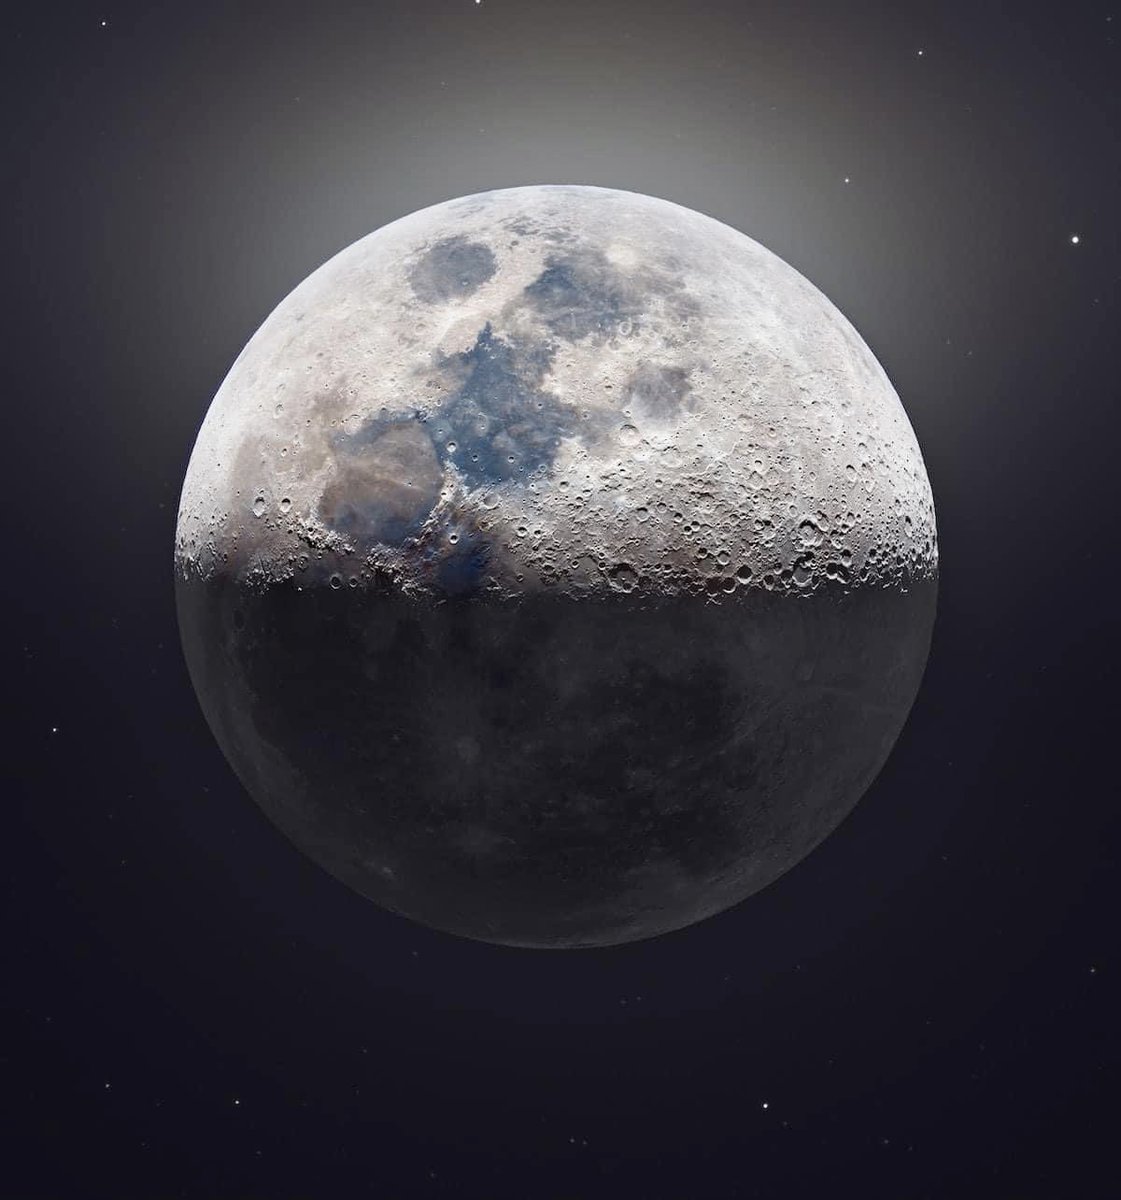 La lune vue en 85 megapixels par Andrew MC Carthy 💙
.
.
.
#moon #Space #spacephotography